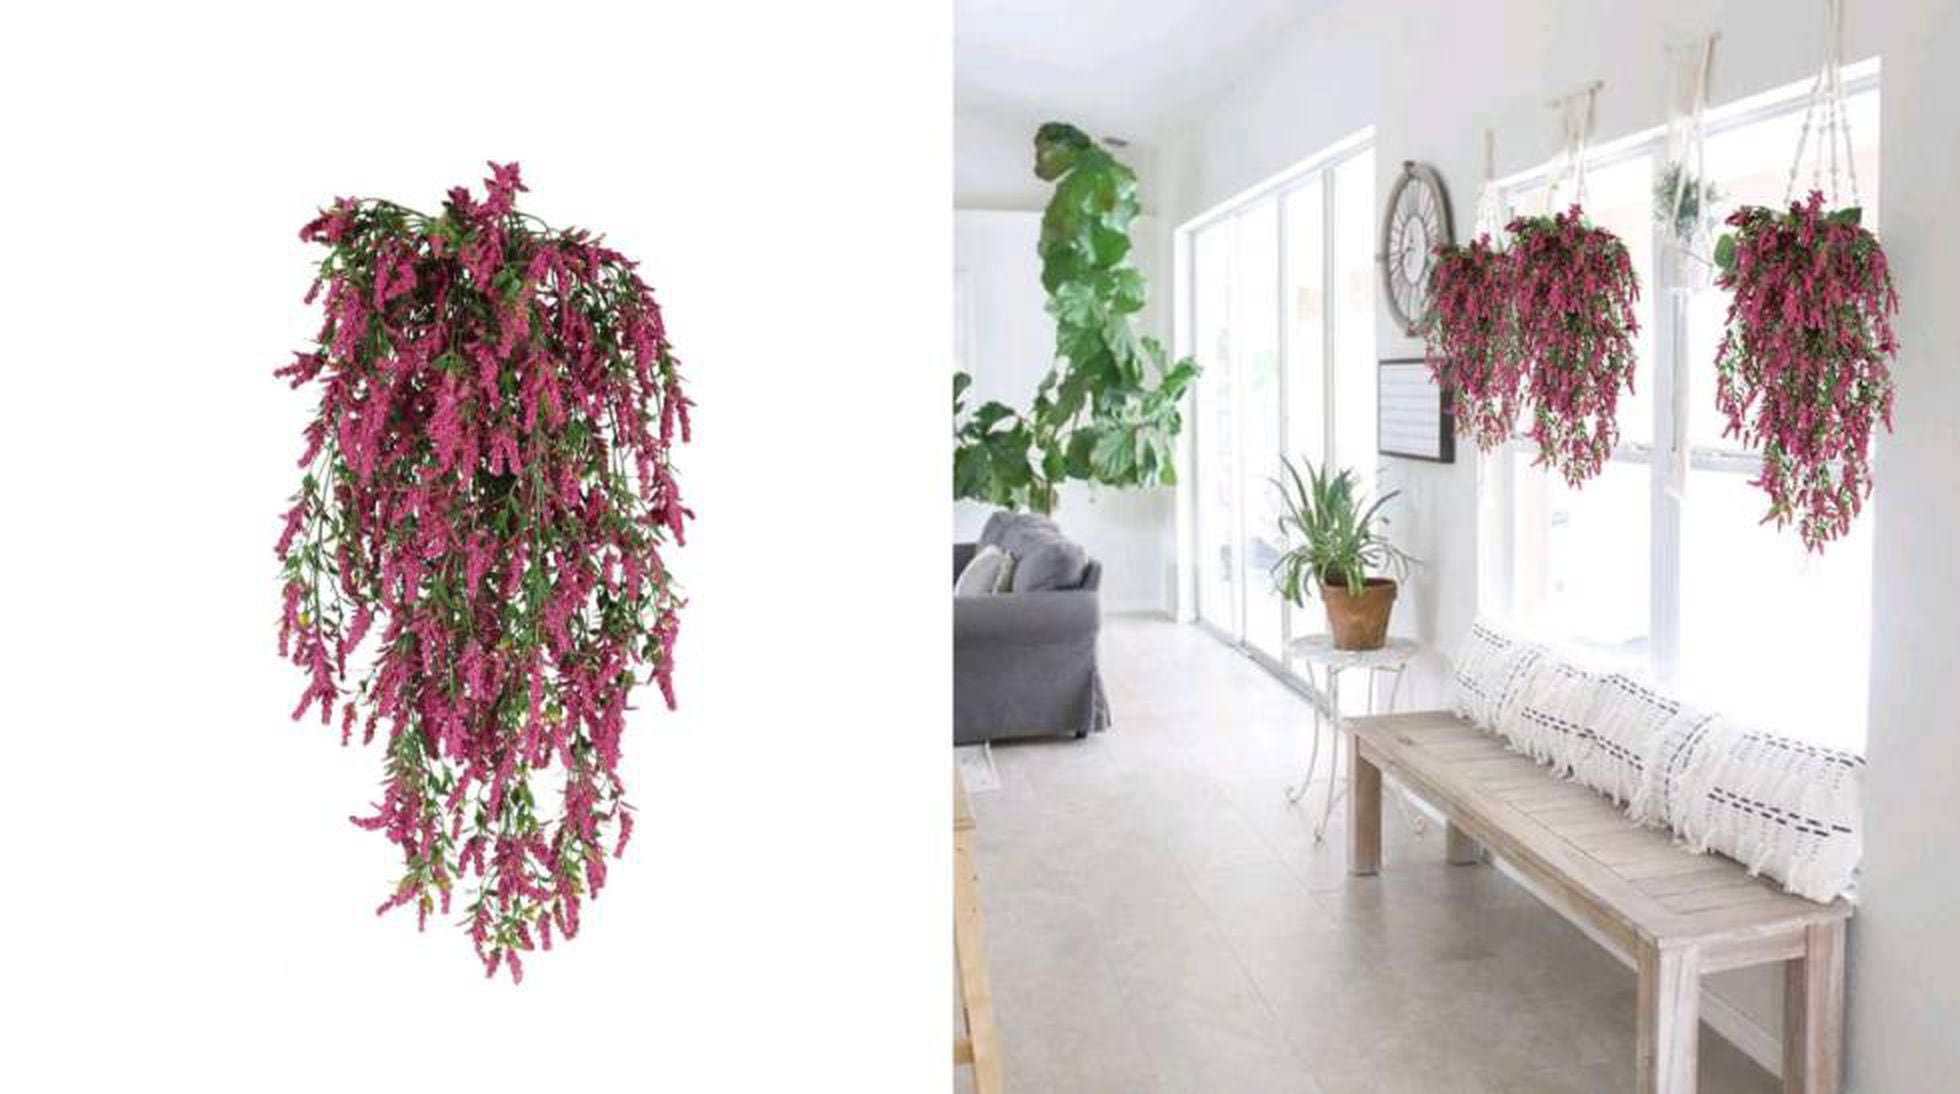 Plantas y flores artificiales para decorar tu hogar que sin duda